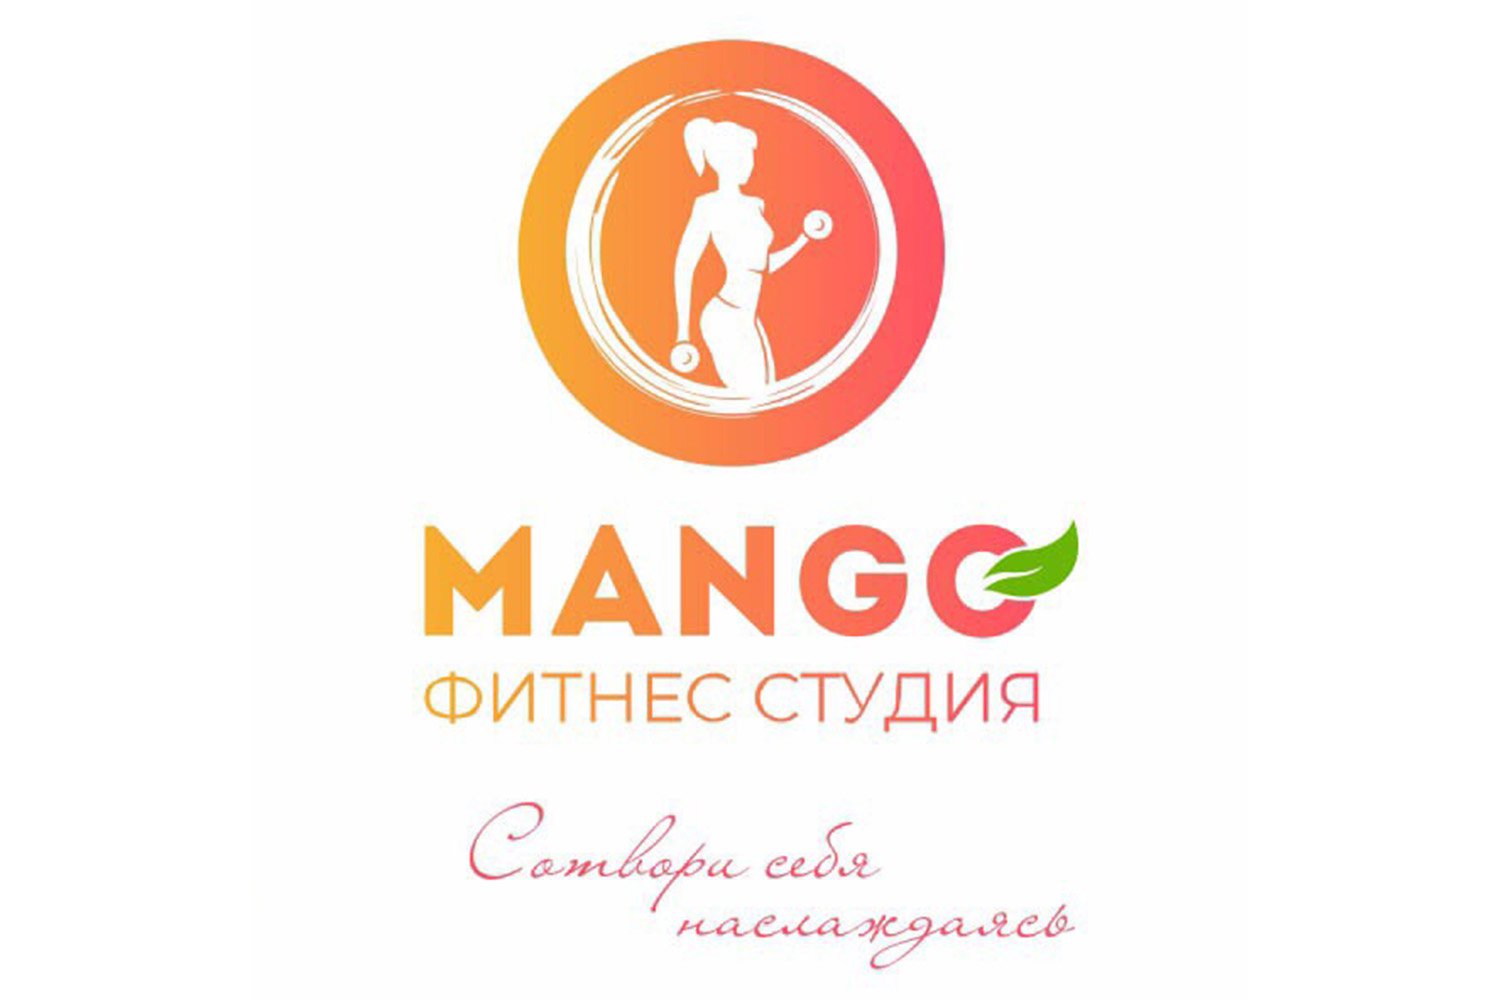 Фитнес-студия Mango: создавай себя, наслаждаясь